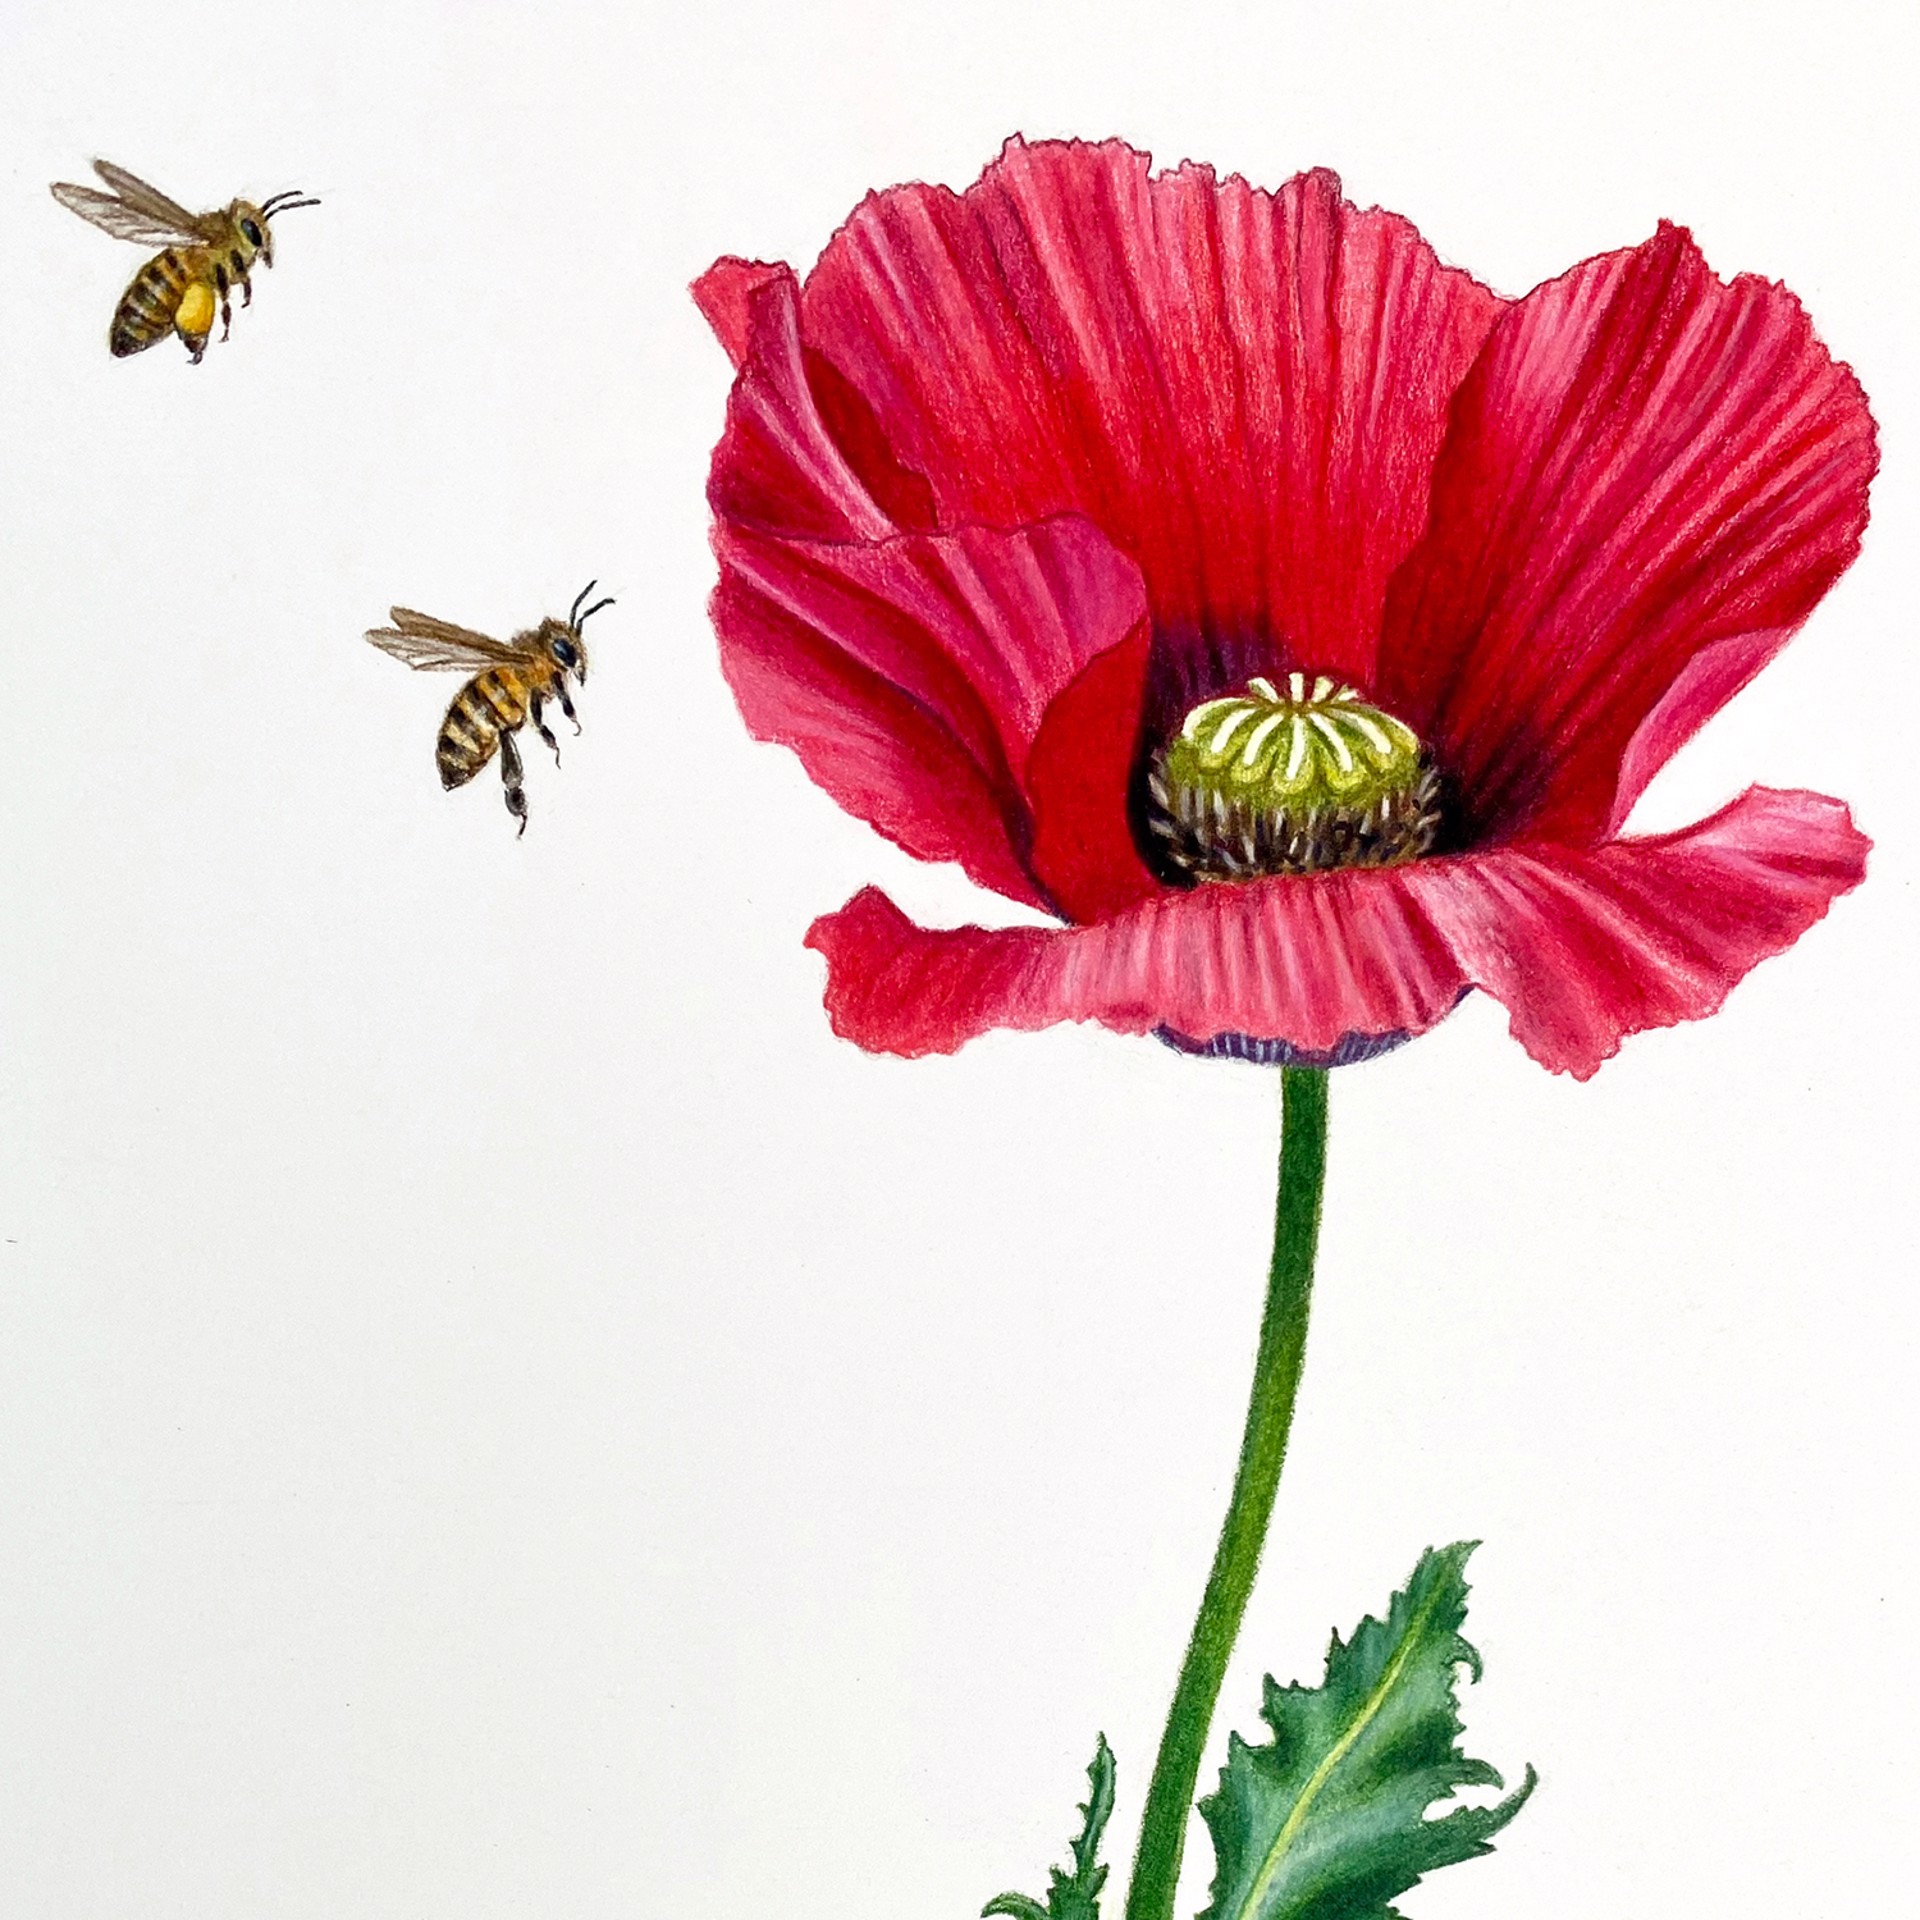 Poppy with Honeybees by Hannah Hanlon